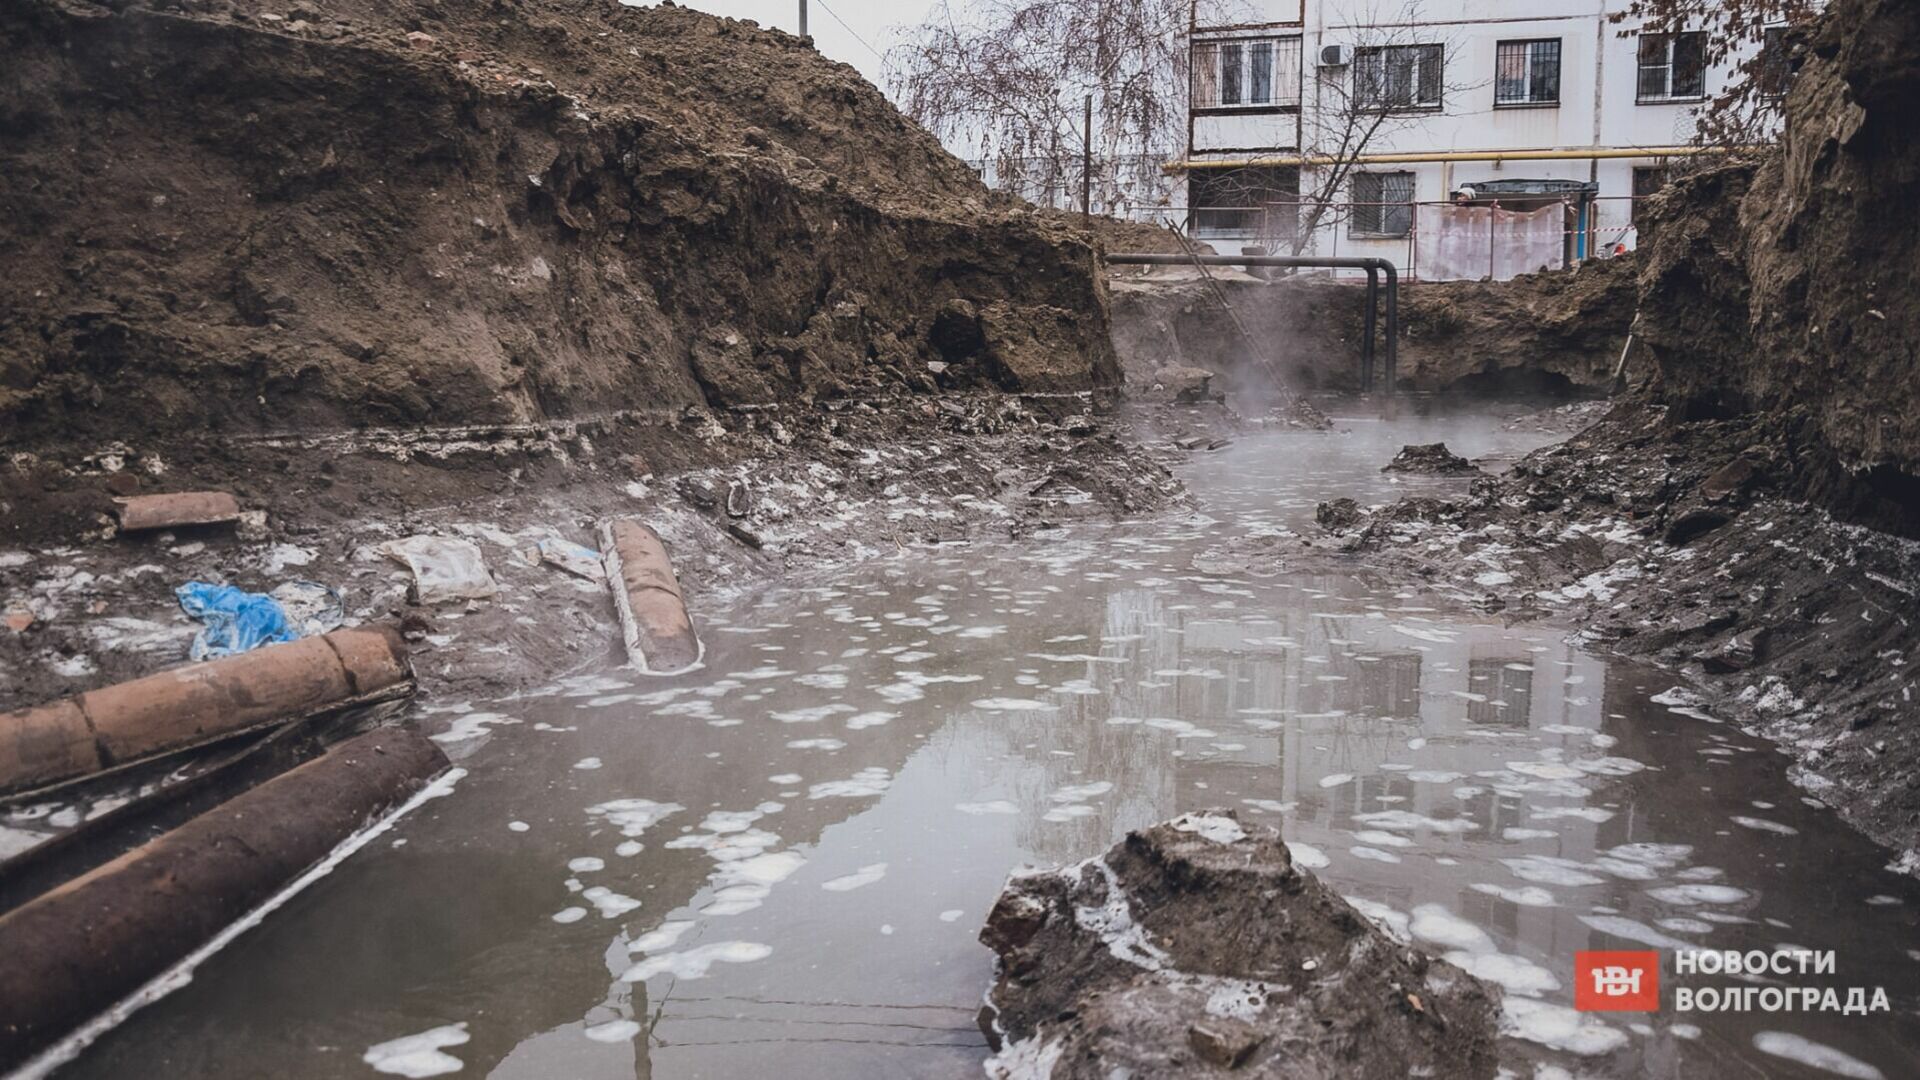 37 км металлолома: изношенные трубы грозят затопить город под Волгоградом